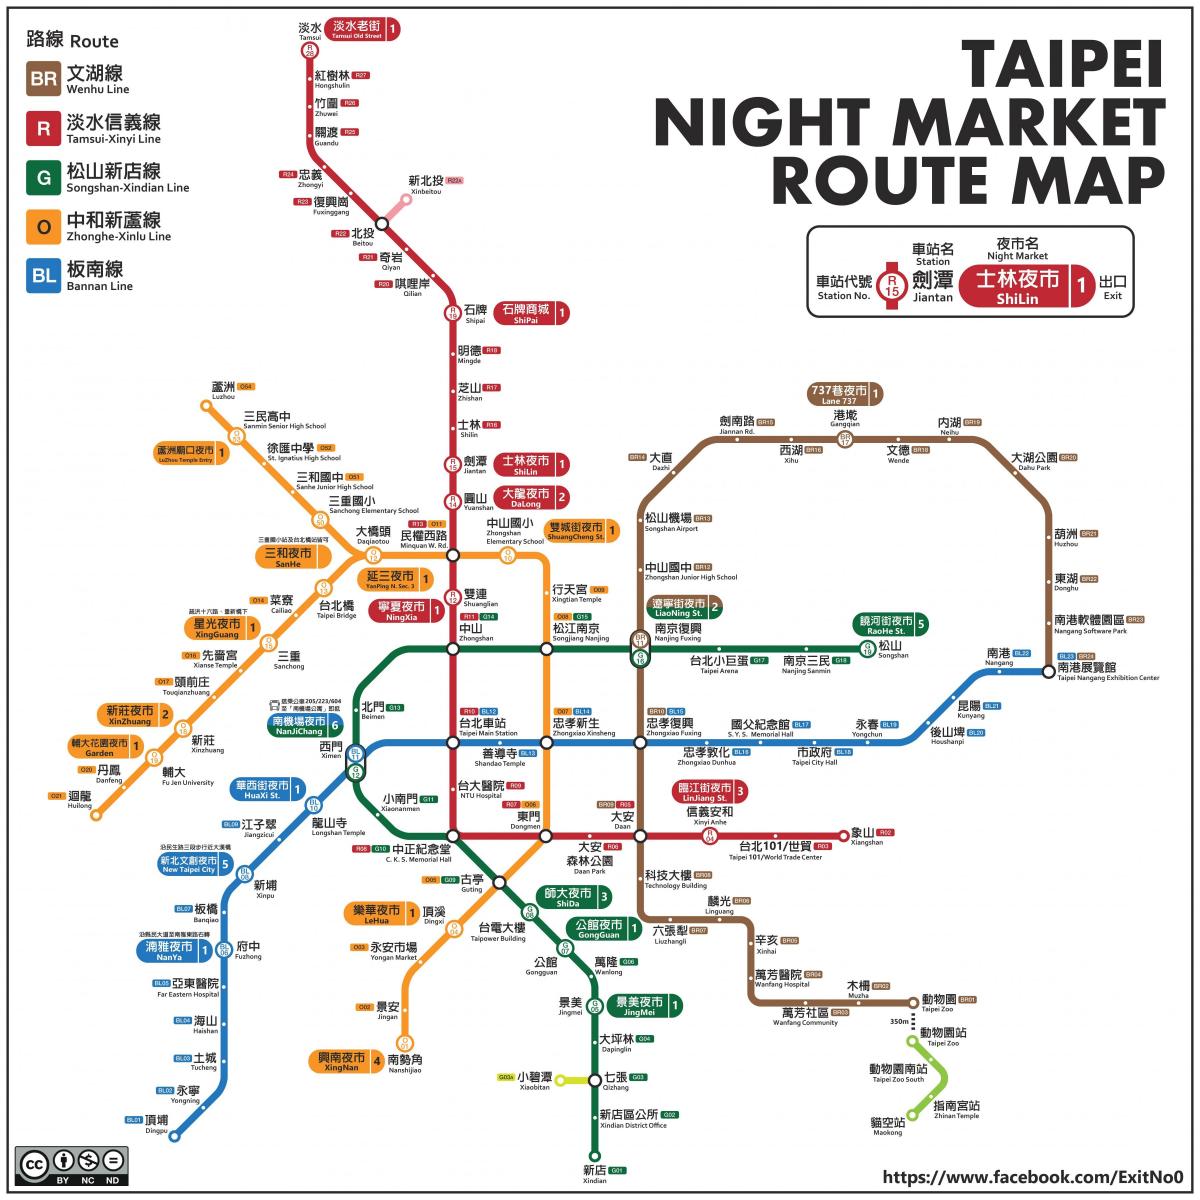 kort over Taipei nat markeder